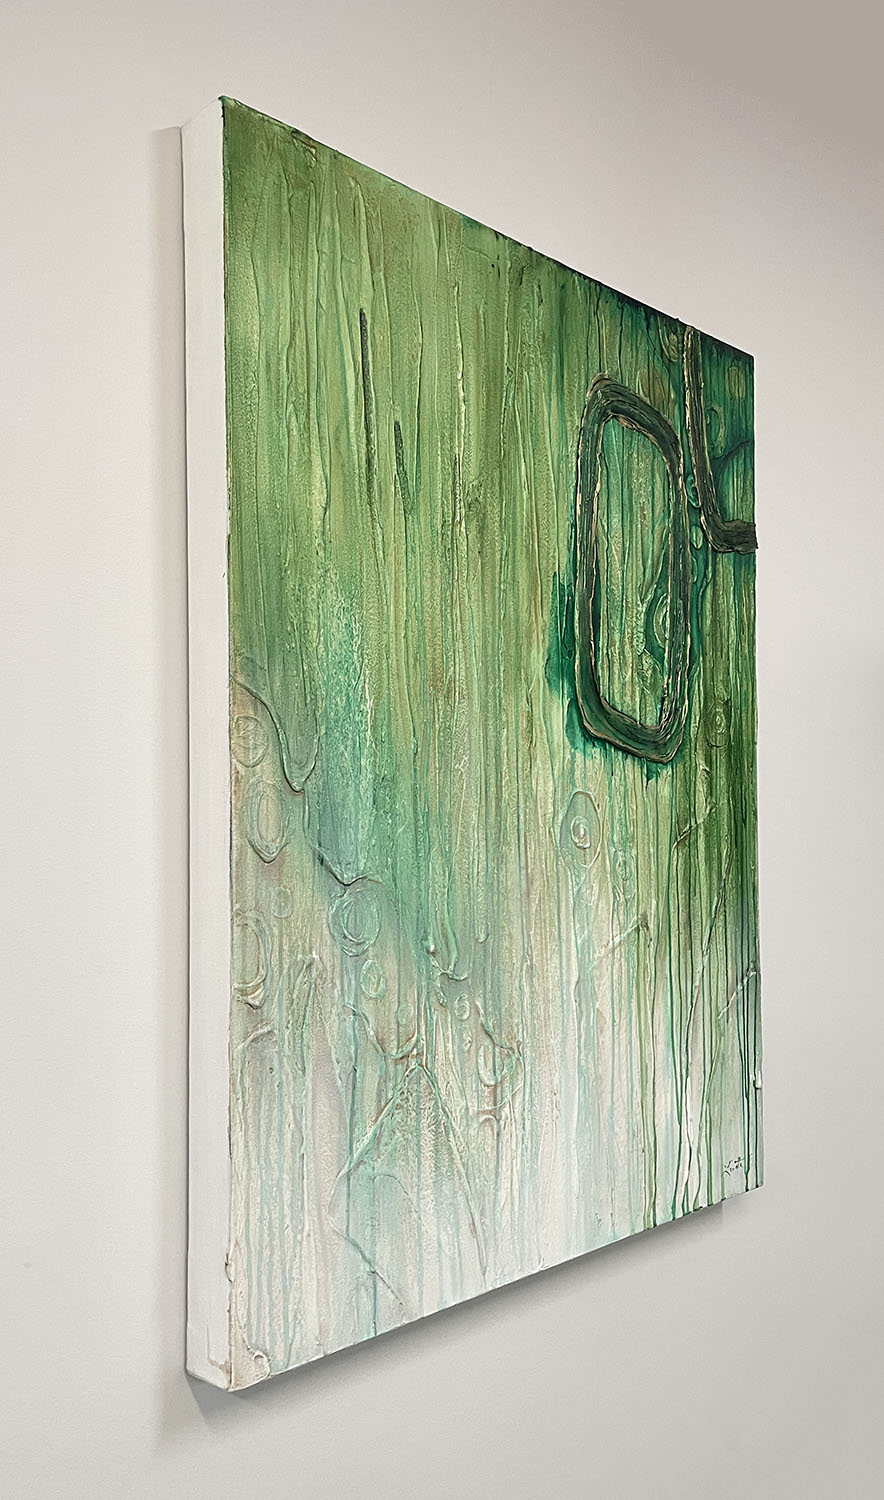 A Little Different green abstract art